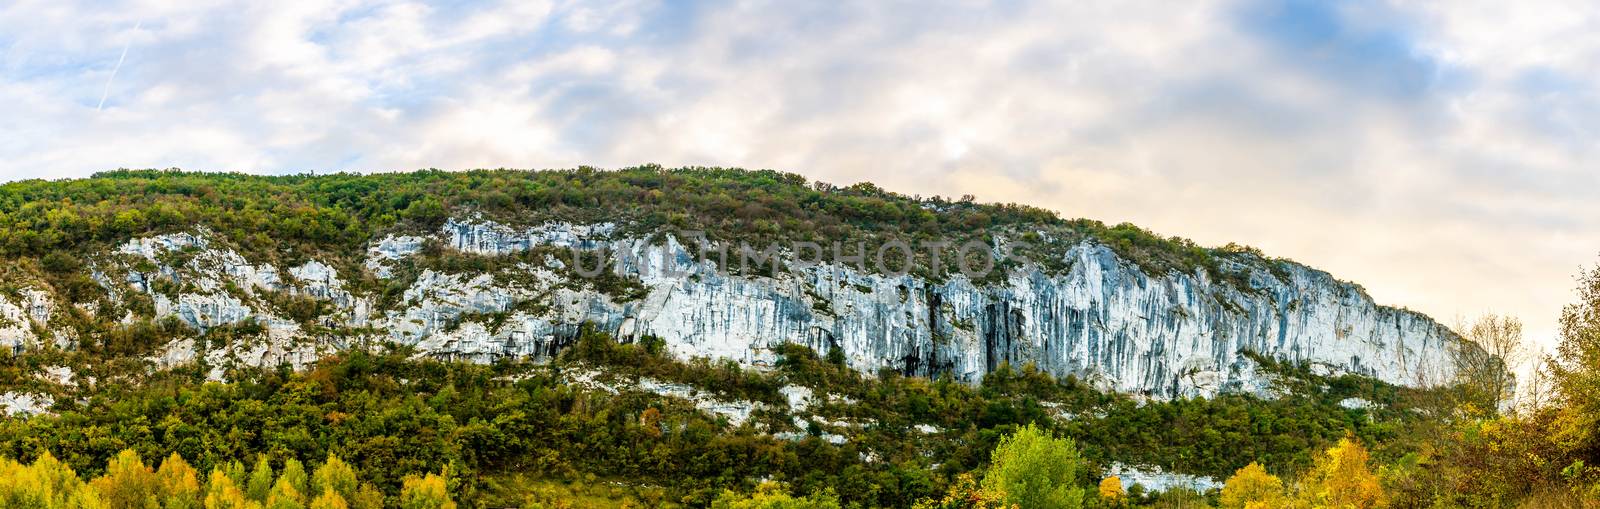 Causses et falaises à Saint Antonin Noble Val dans l'Aveyron en Occitanie, France by Frederic